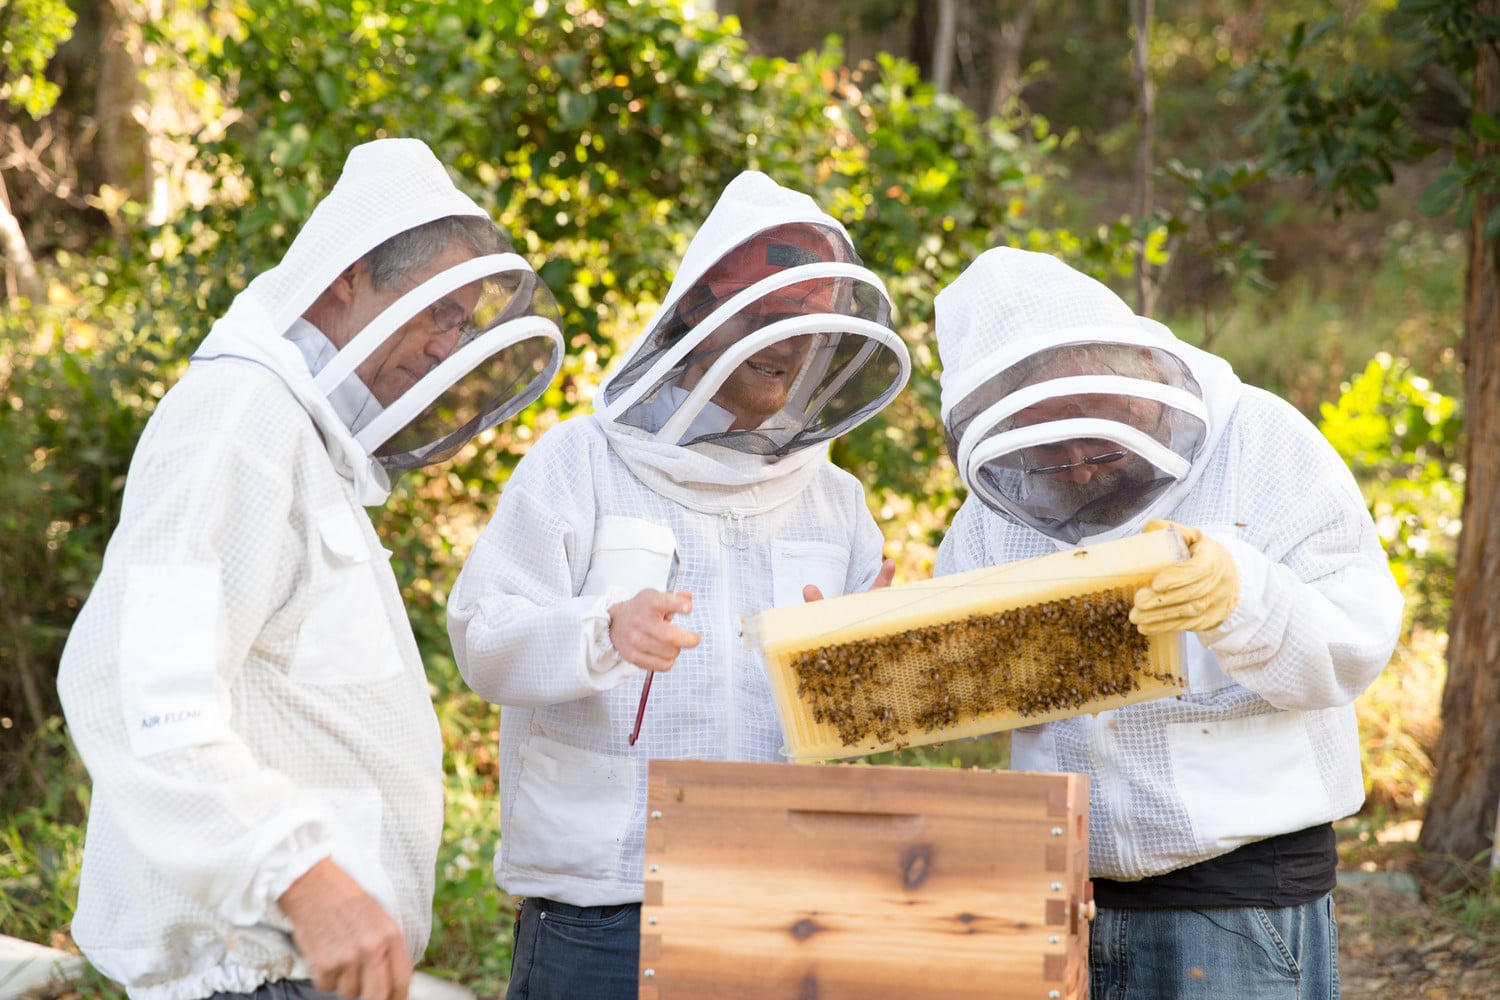 , Salvemos a las abejas! 10 cosas que puedes hacer para ayudar a salvarlas